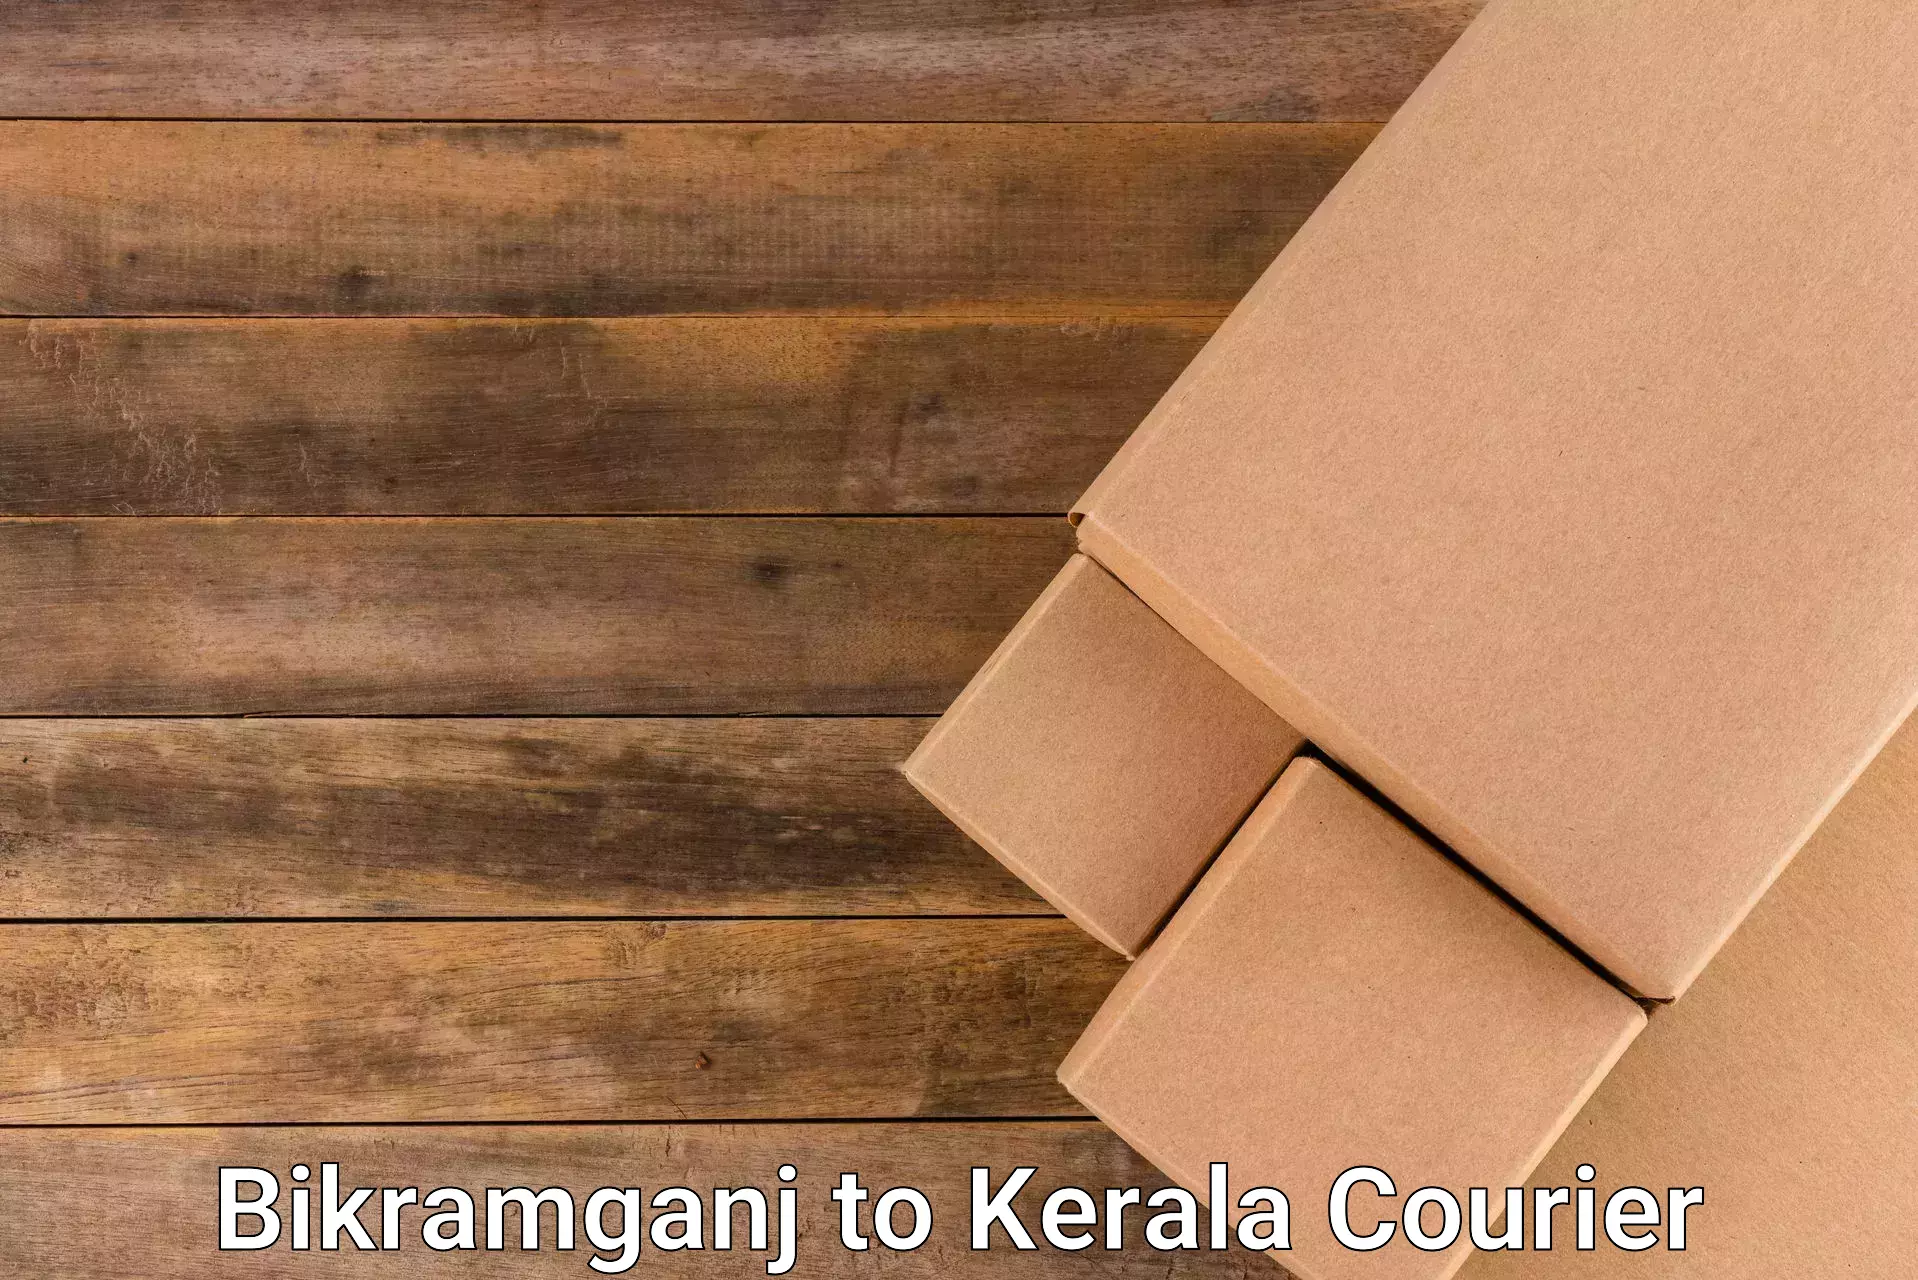 Multi-national courier services Bikramganj to Kothamangalam